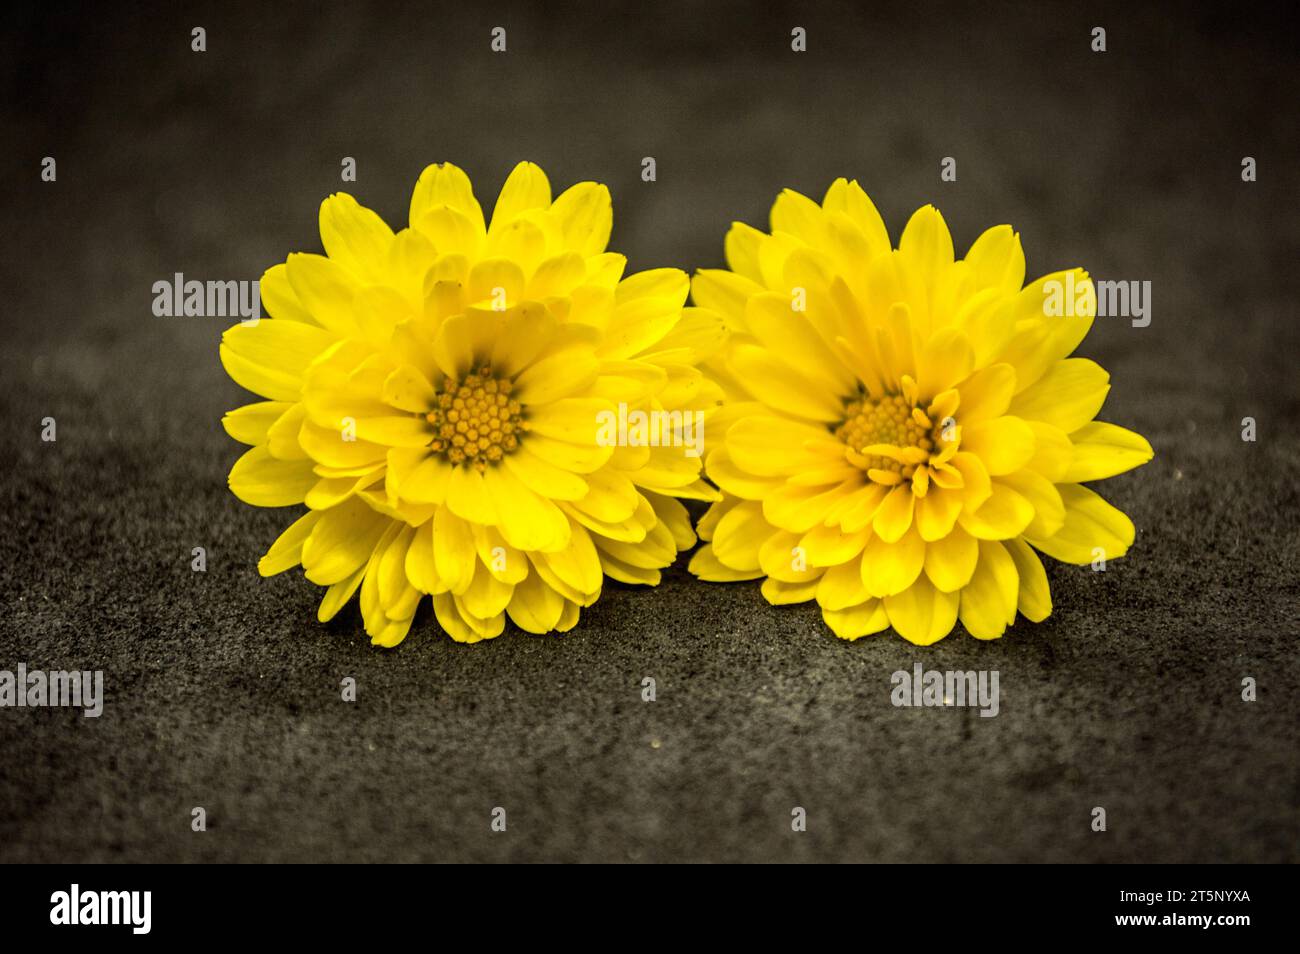 Margaritas, flores amarillas de jardín Stock Photo